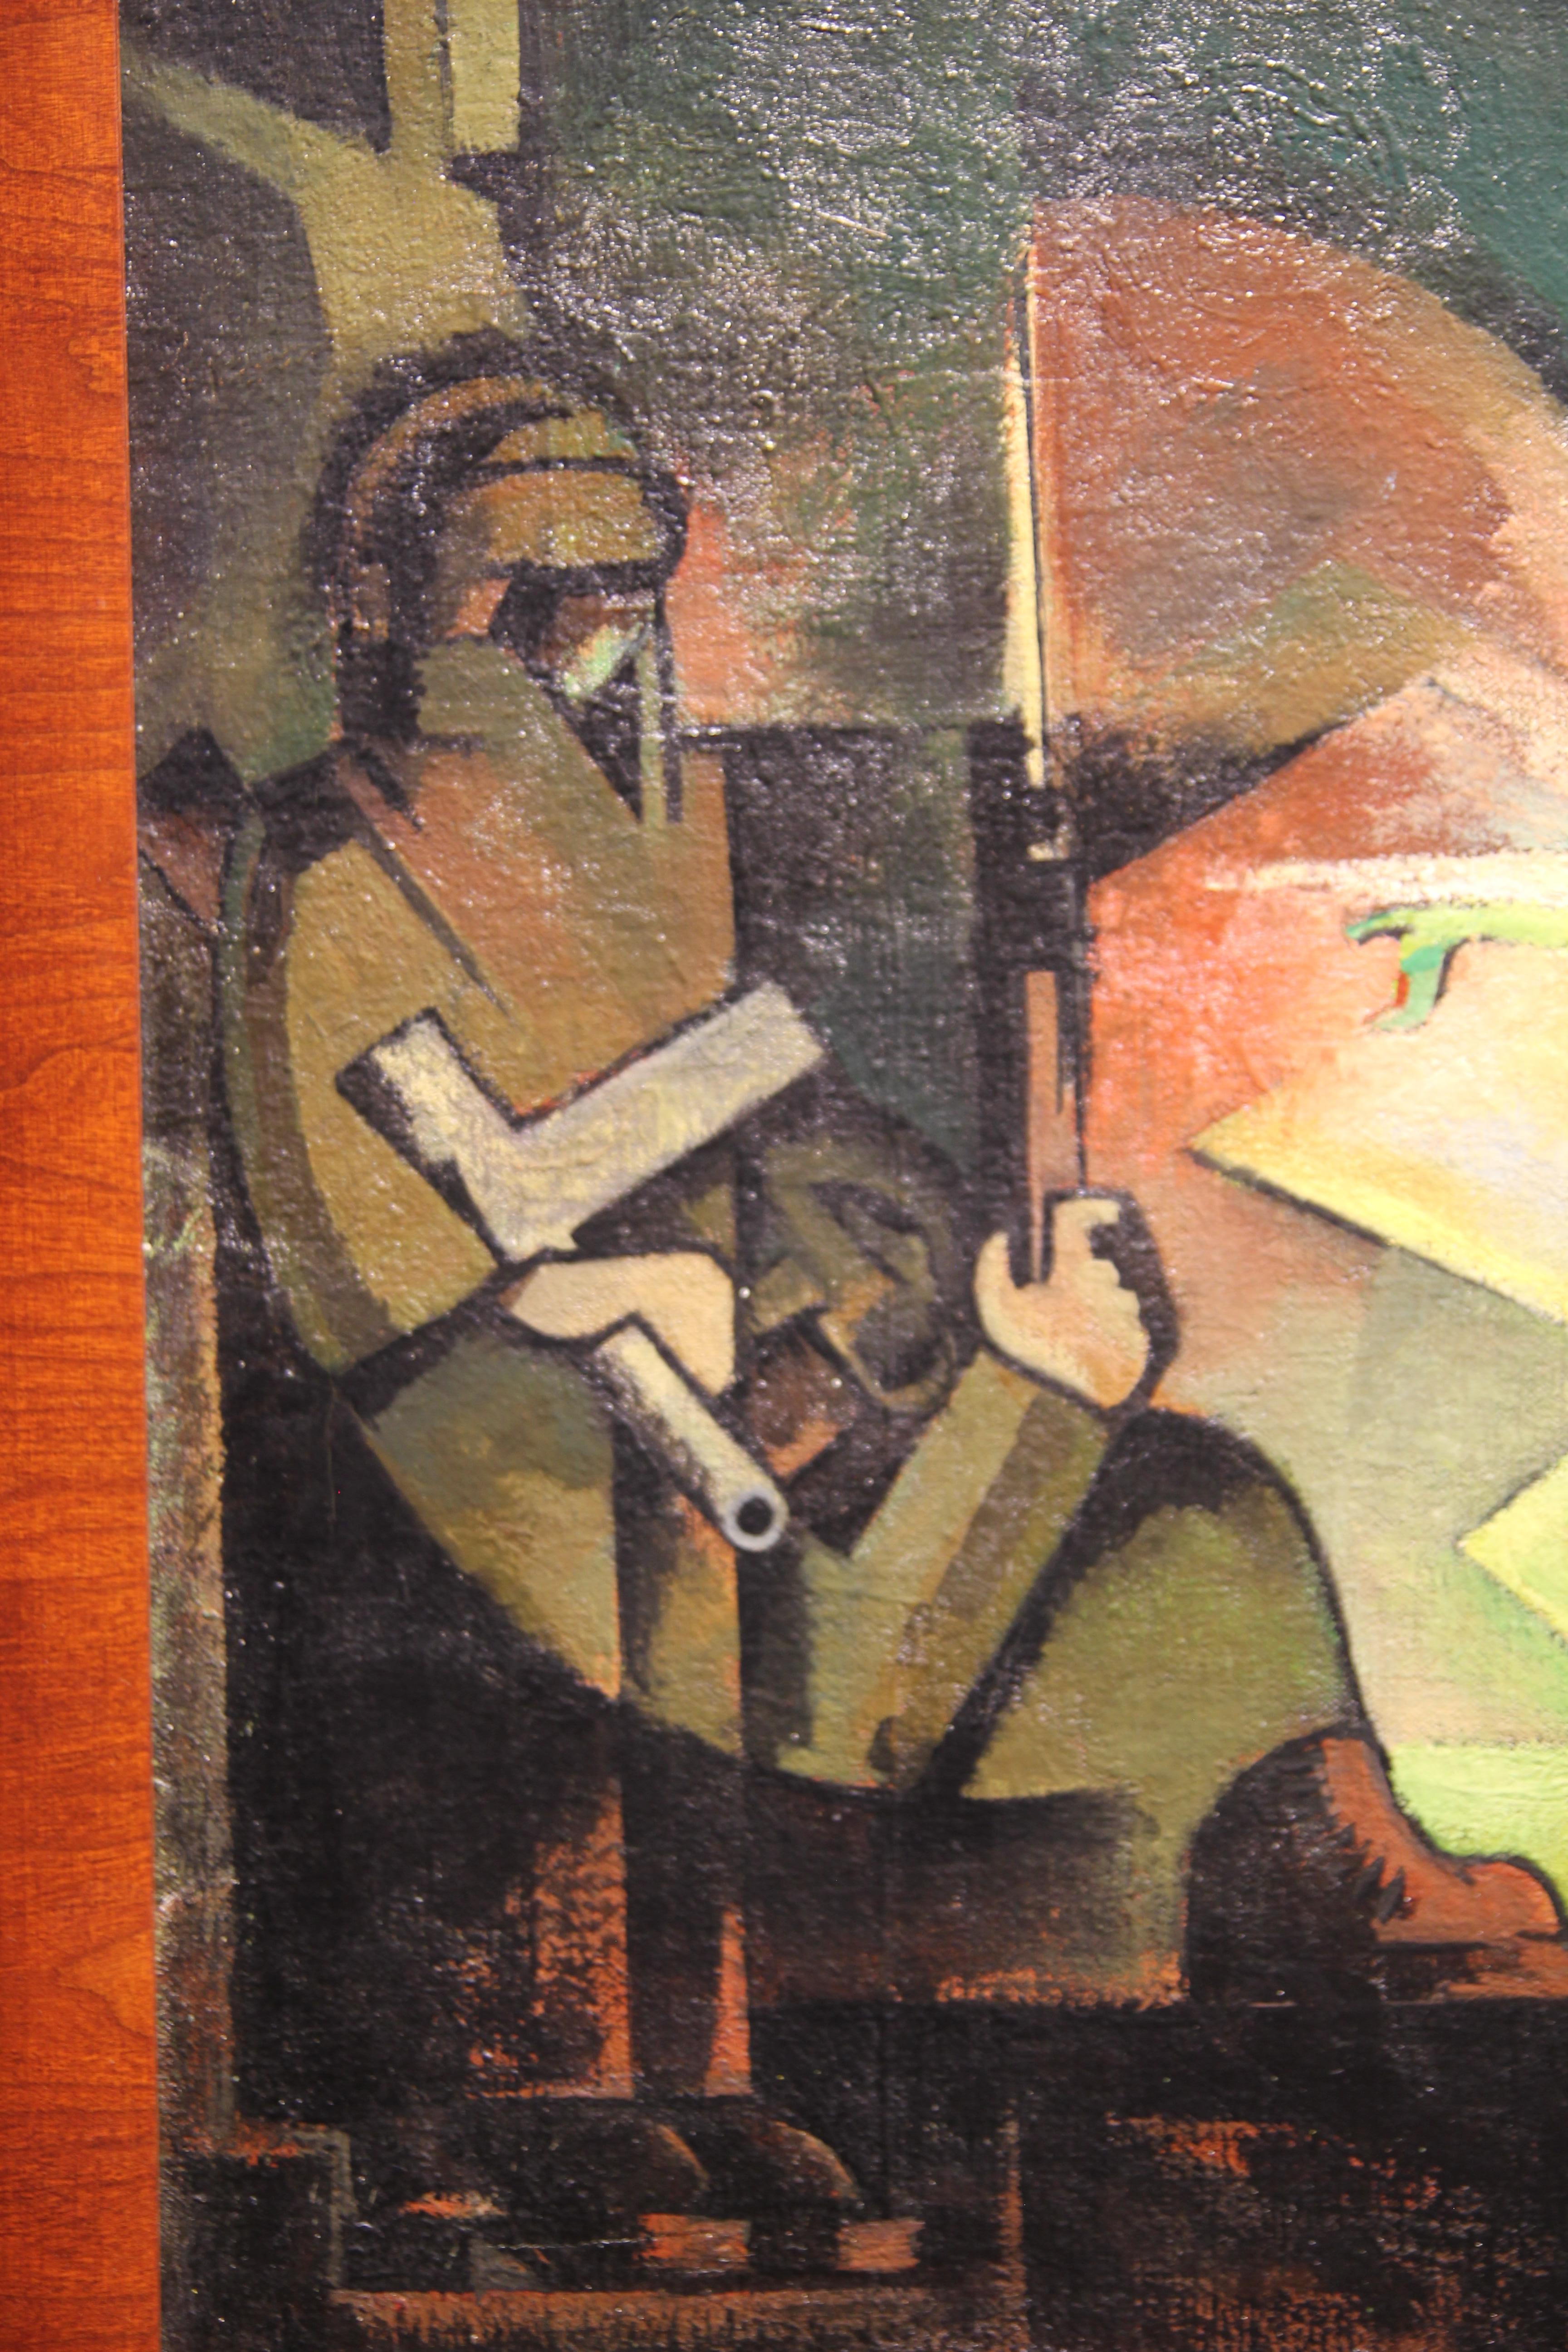 Tiefgründiges Gemälde im kubistischen Stil mit der Kreuzigung Christi. Wie bei der traditionellen Kreuzigungsdarstellung befinden sich zwei Figuren auf beiden Seiten des Kreuzes. Das Werk ist vom Künstler in der unteren Ecke signiert und datiert.